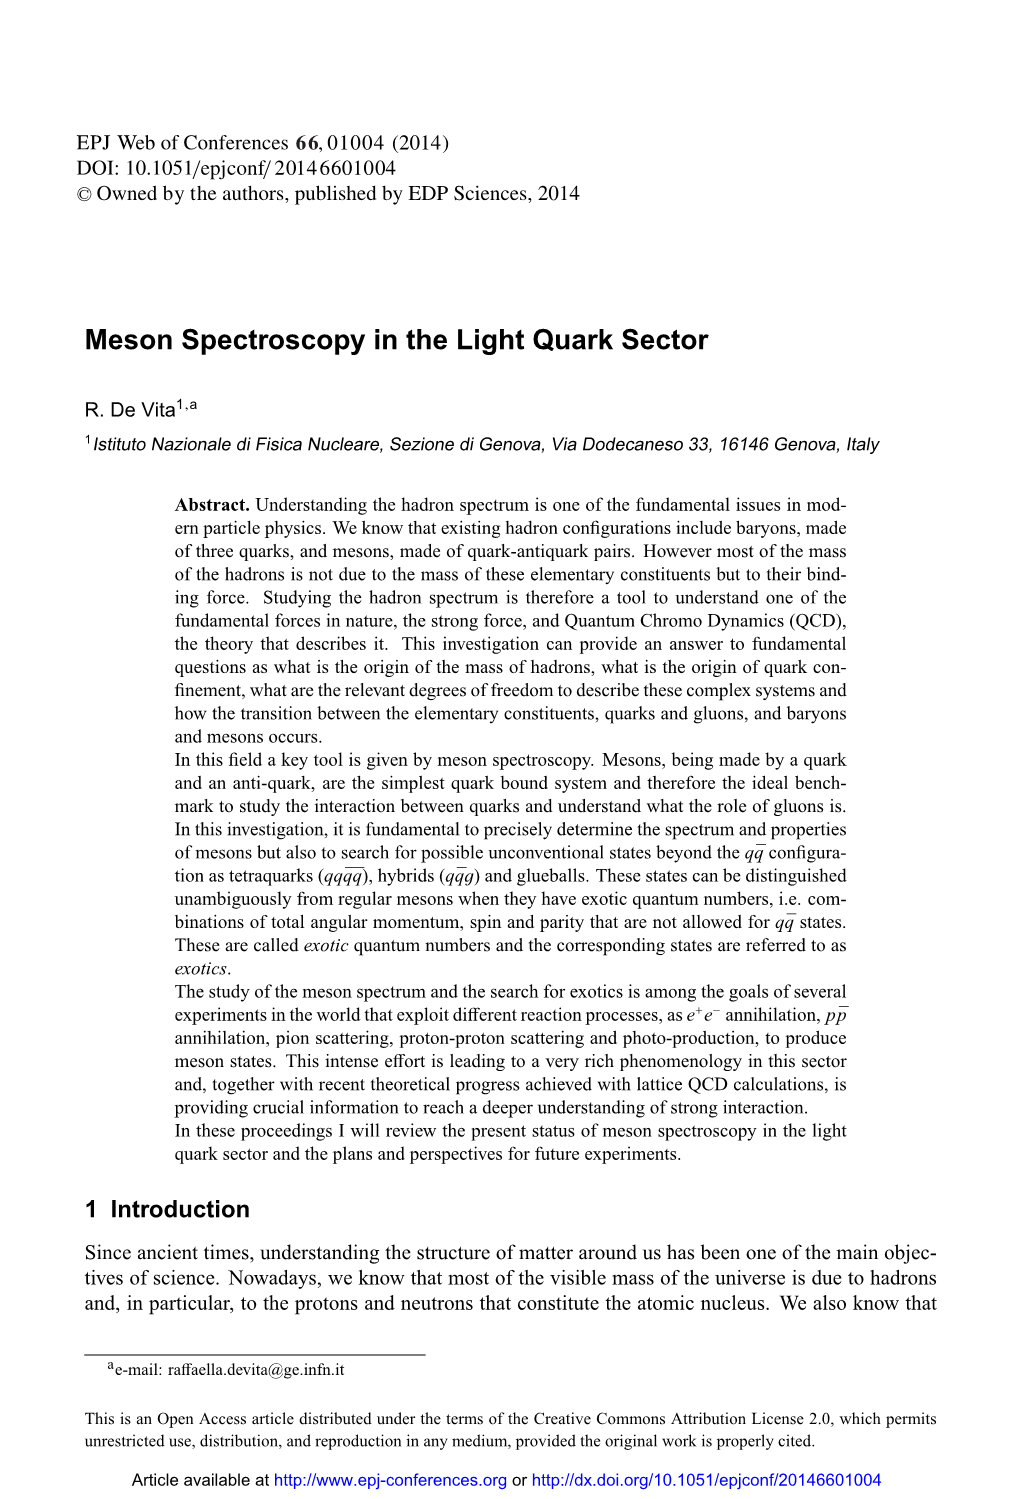 Meson Spectroscopy in the Light Quark Sector